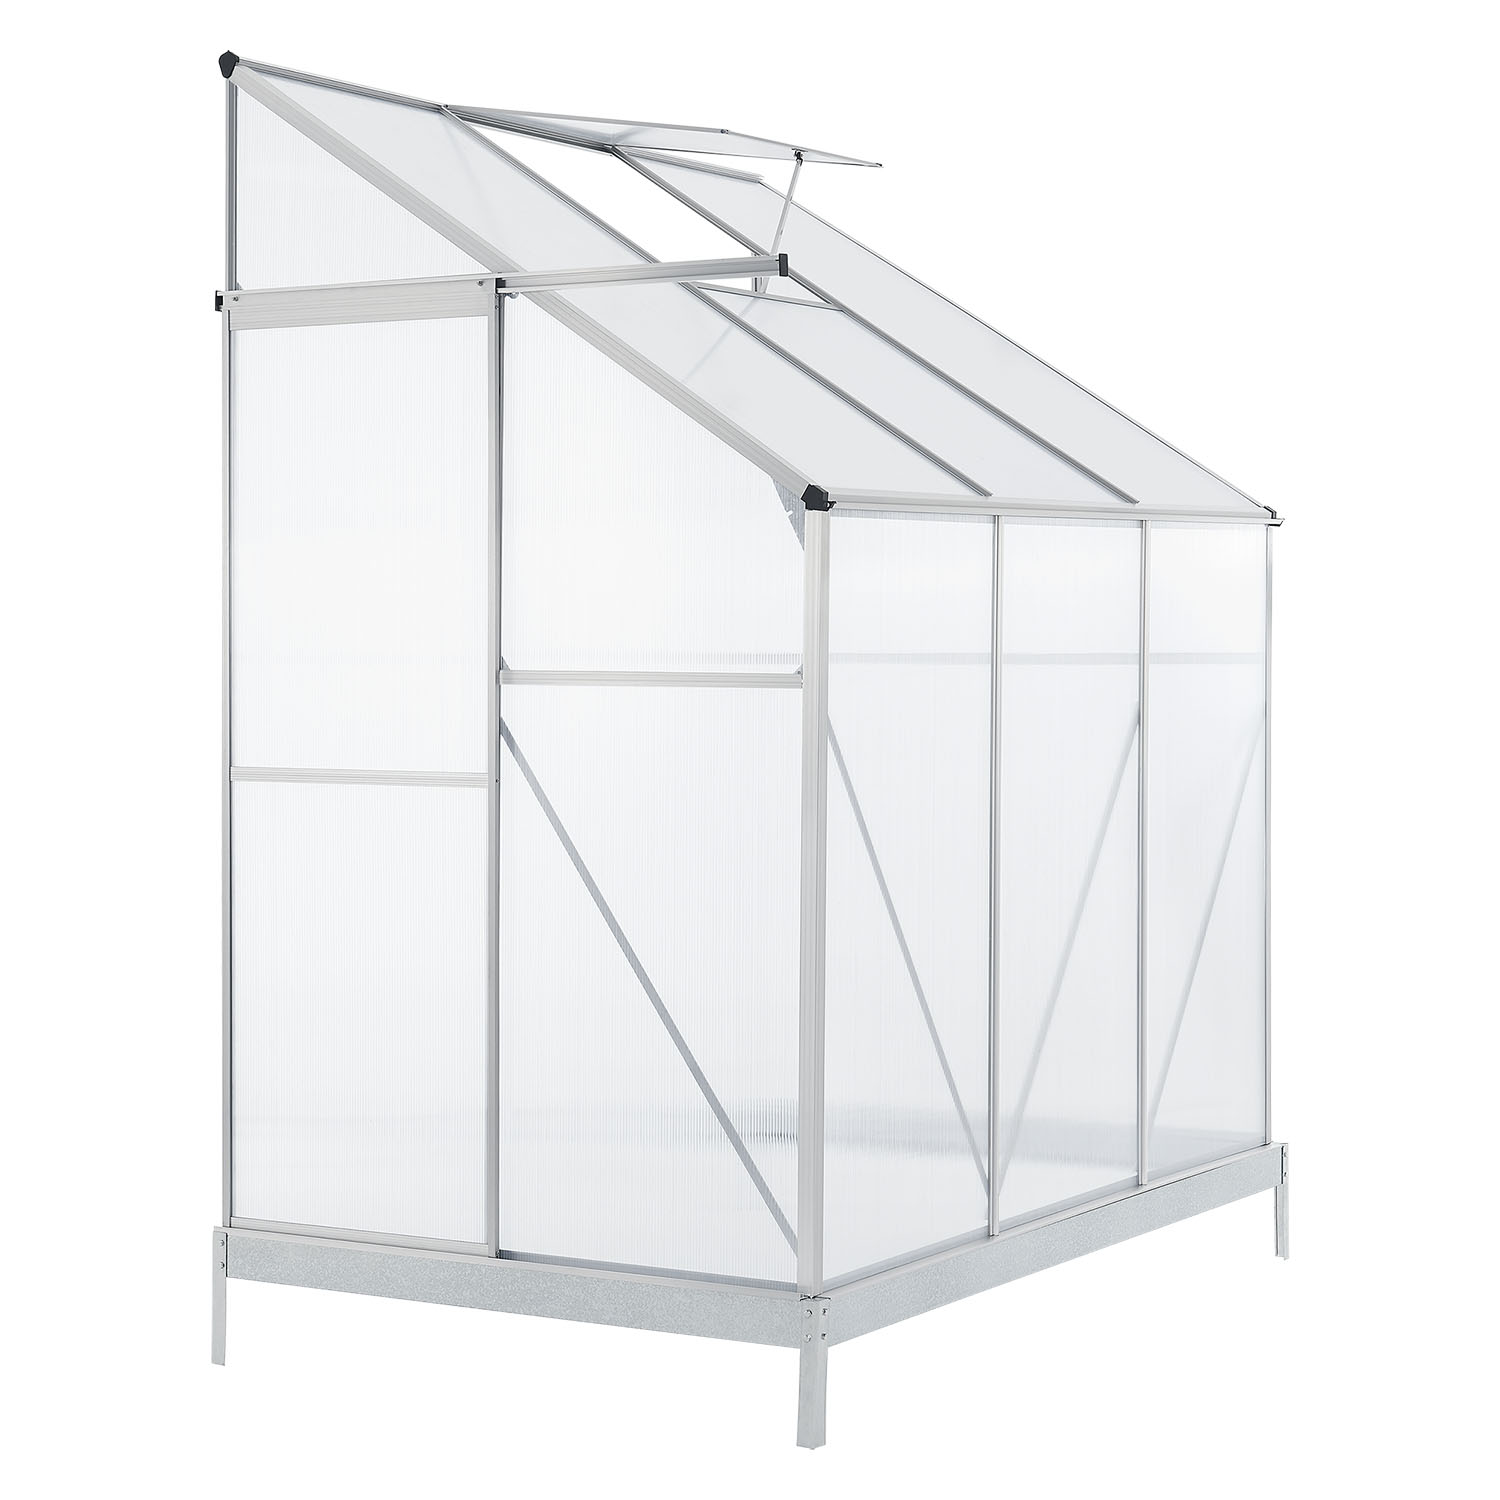  Hliníkový boční skleník 3 m² s 1 střešním oknem včetně podlahových základů